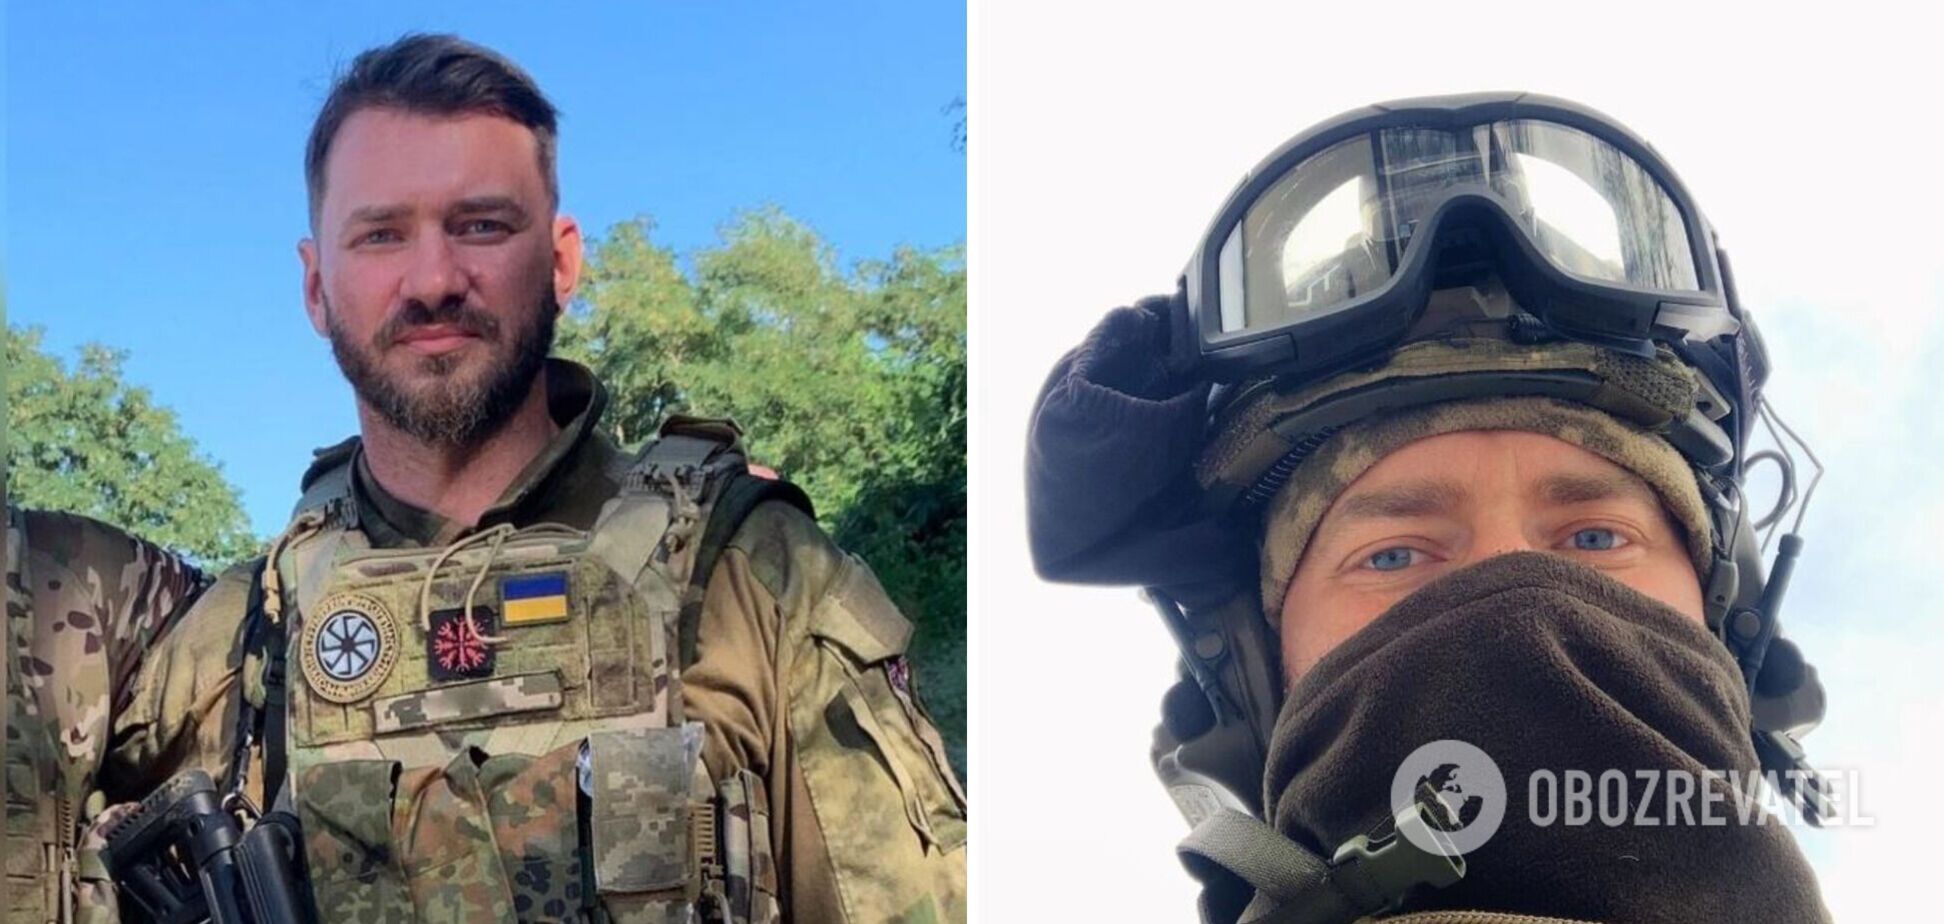 'Не опускайте глаза!' Дмитрий Дикусар эмоционально обратился к украинцам в тылу, впервые за долгое время появившись в соцсети